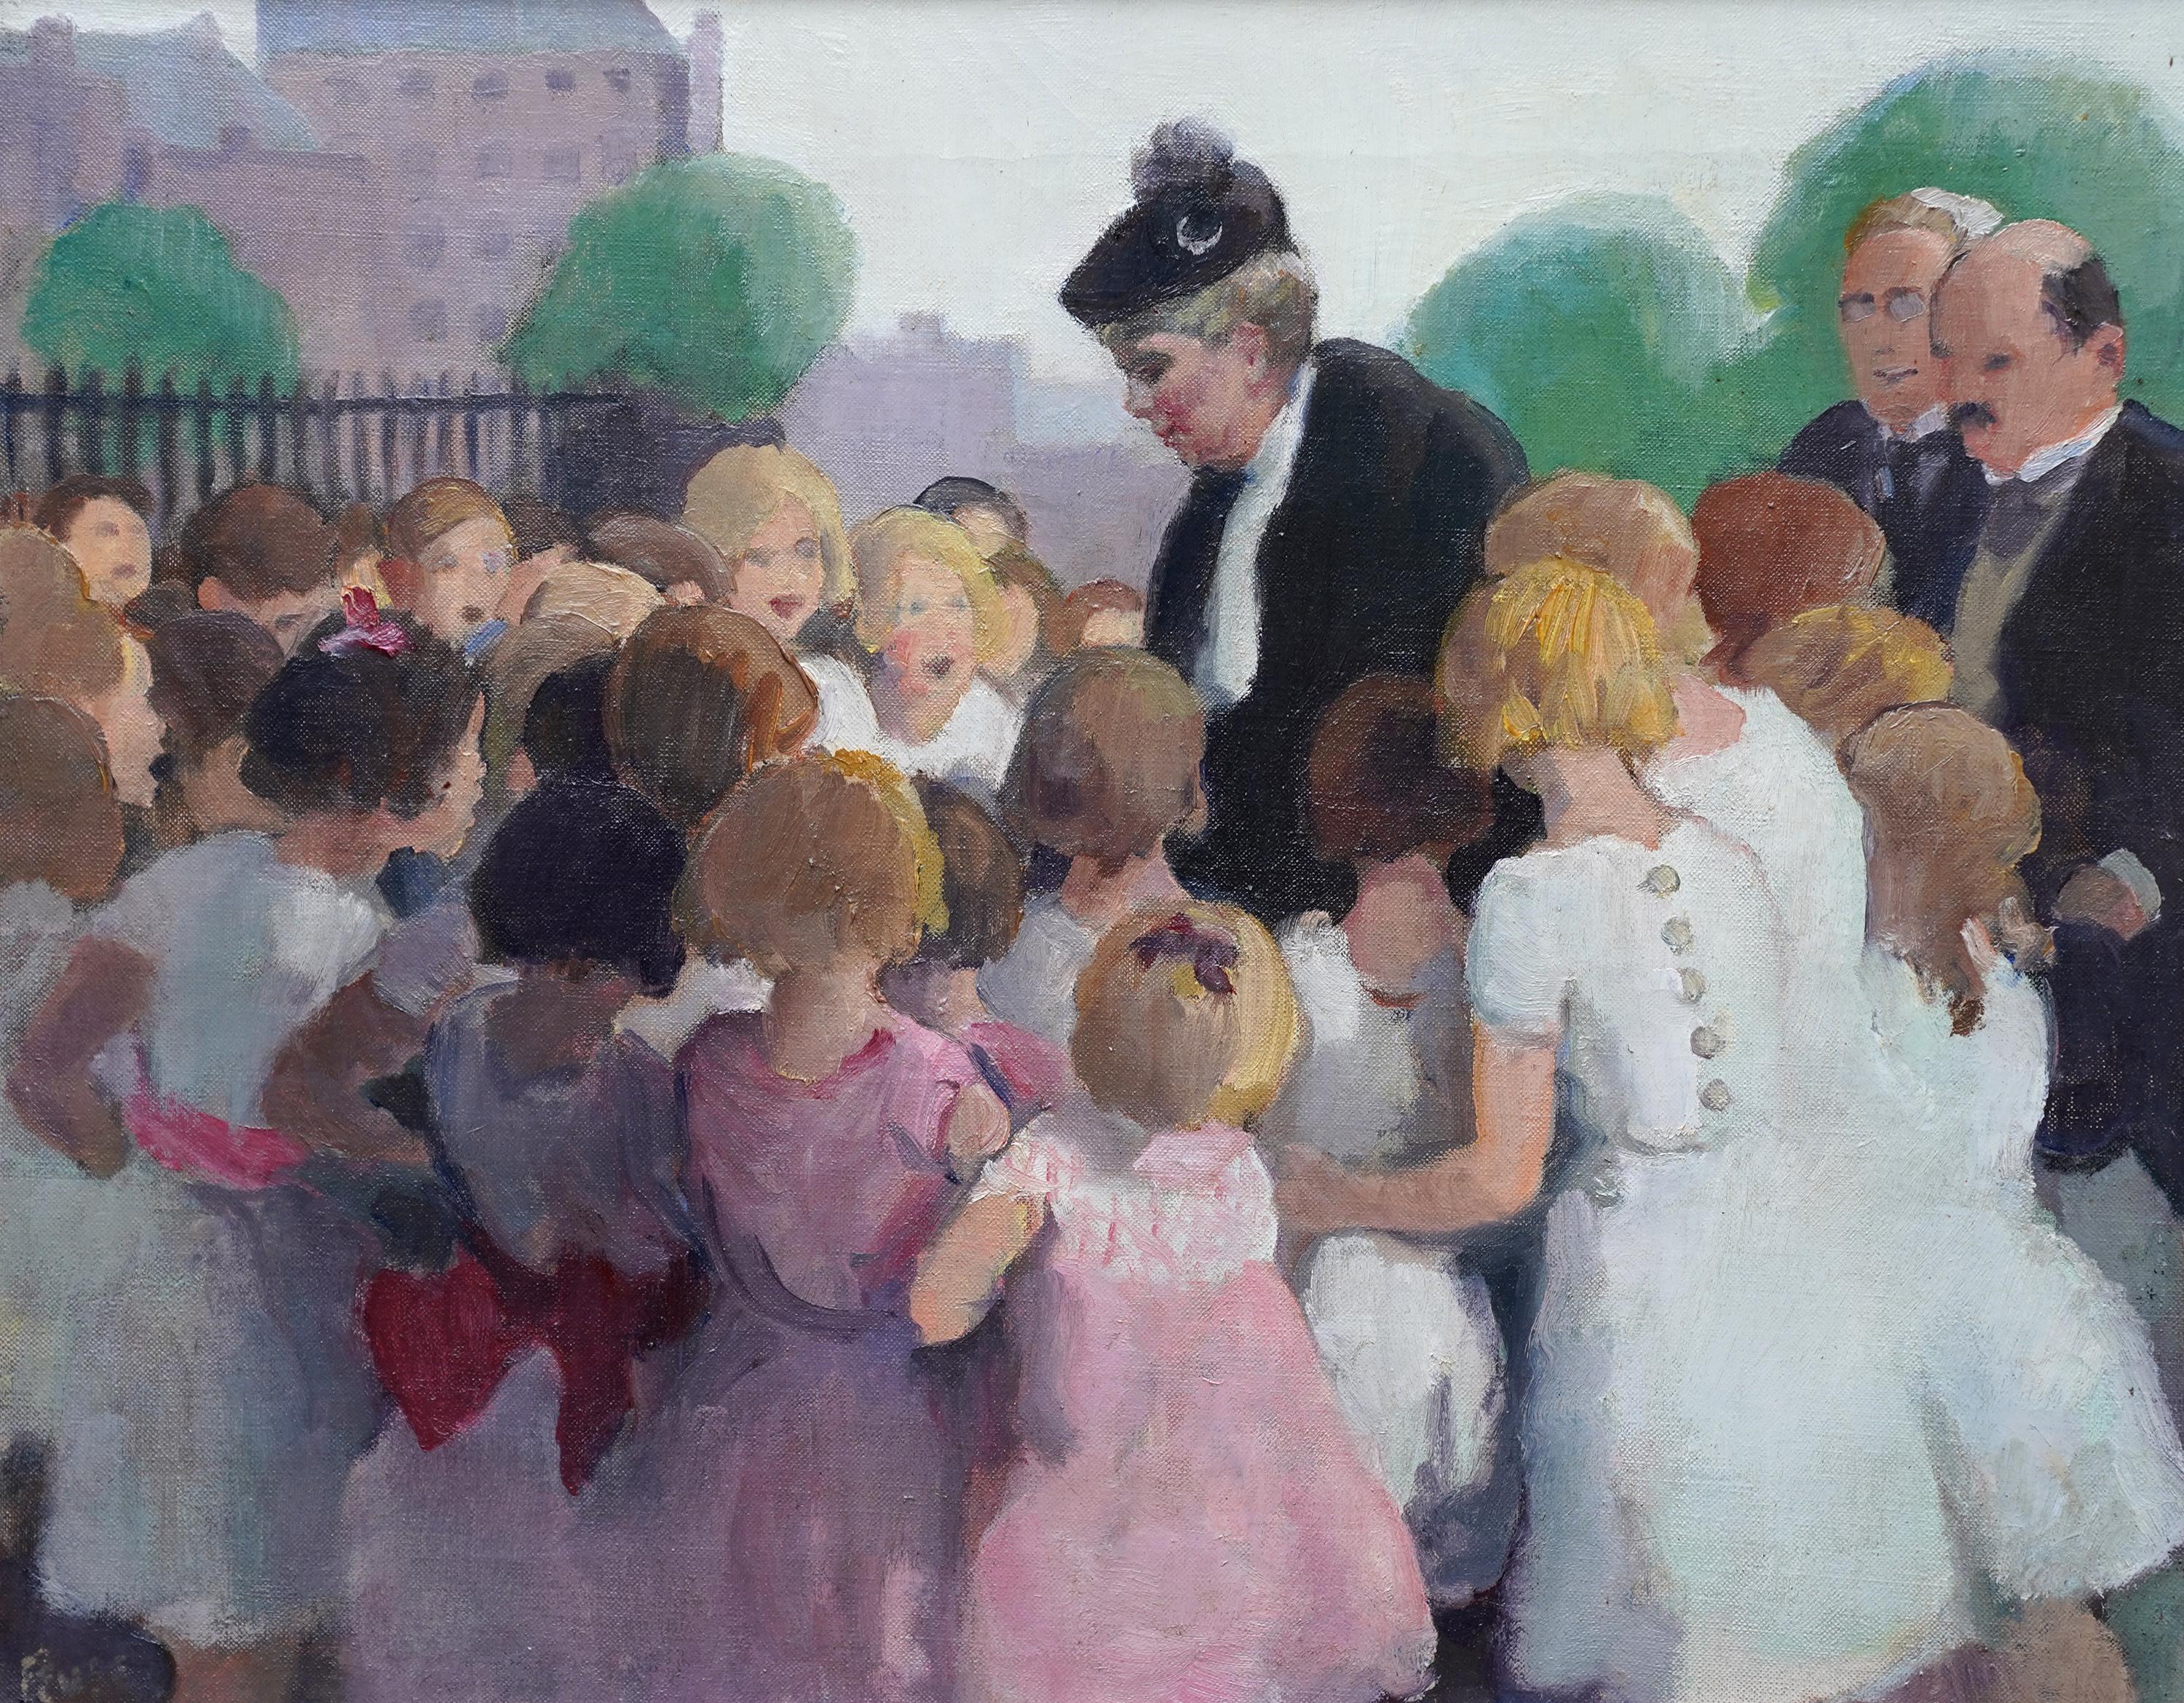 Les enfants de l'école Queen Mary Greeting - Peinture à l'huile de portrait de la royauté britannique de 1910 - Painting de Spencer Pryse